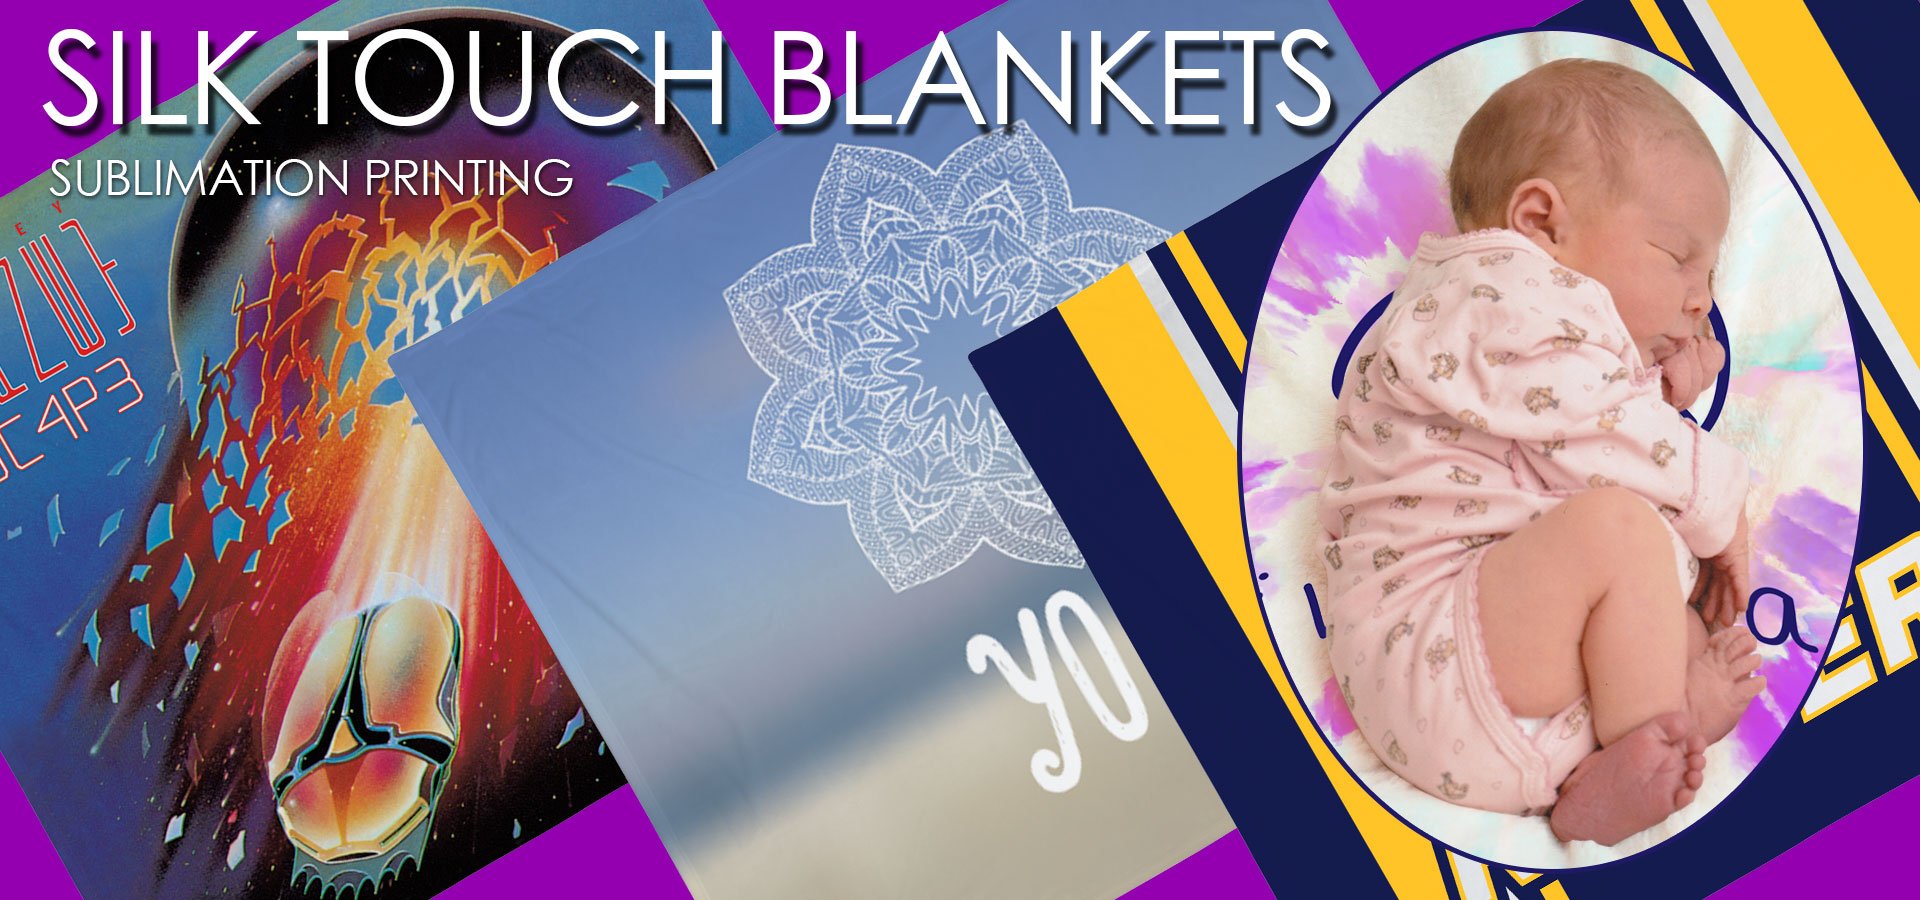 Best Printed Blankets in the U.S.